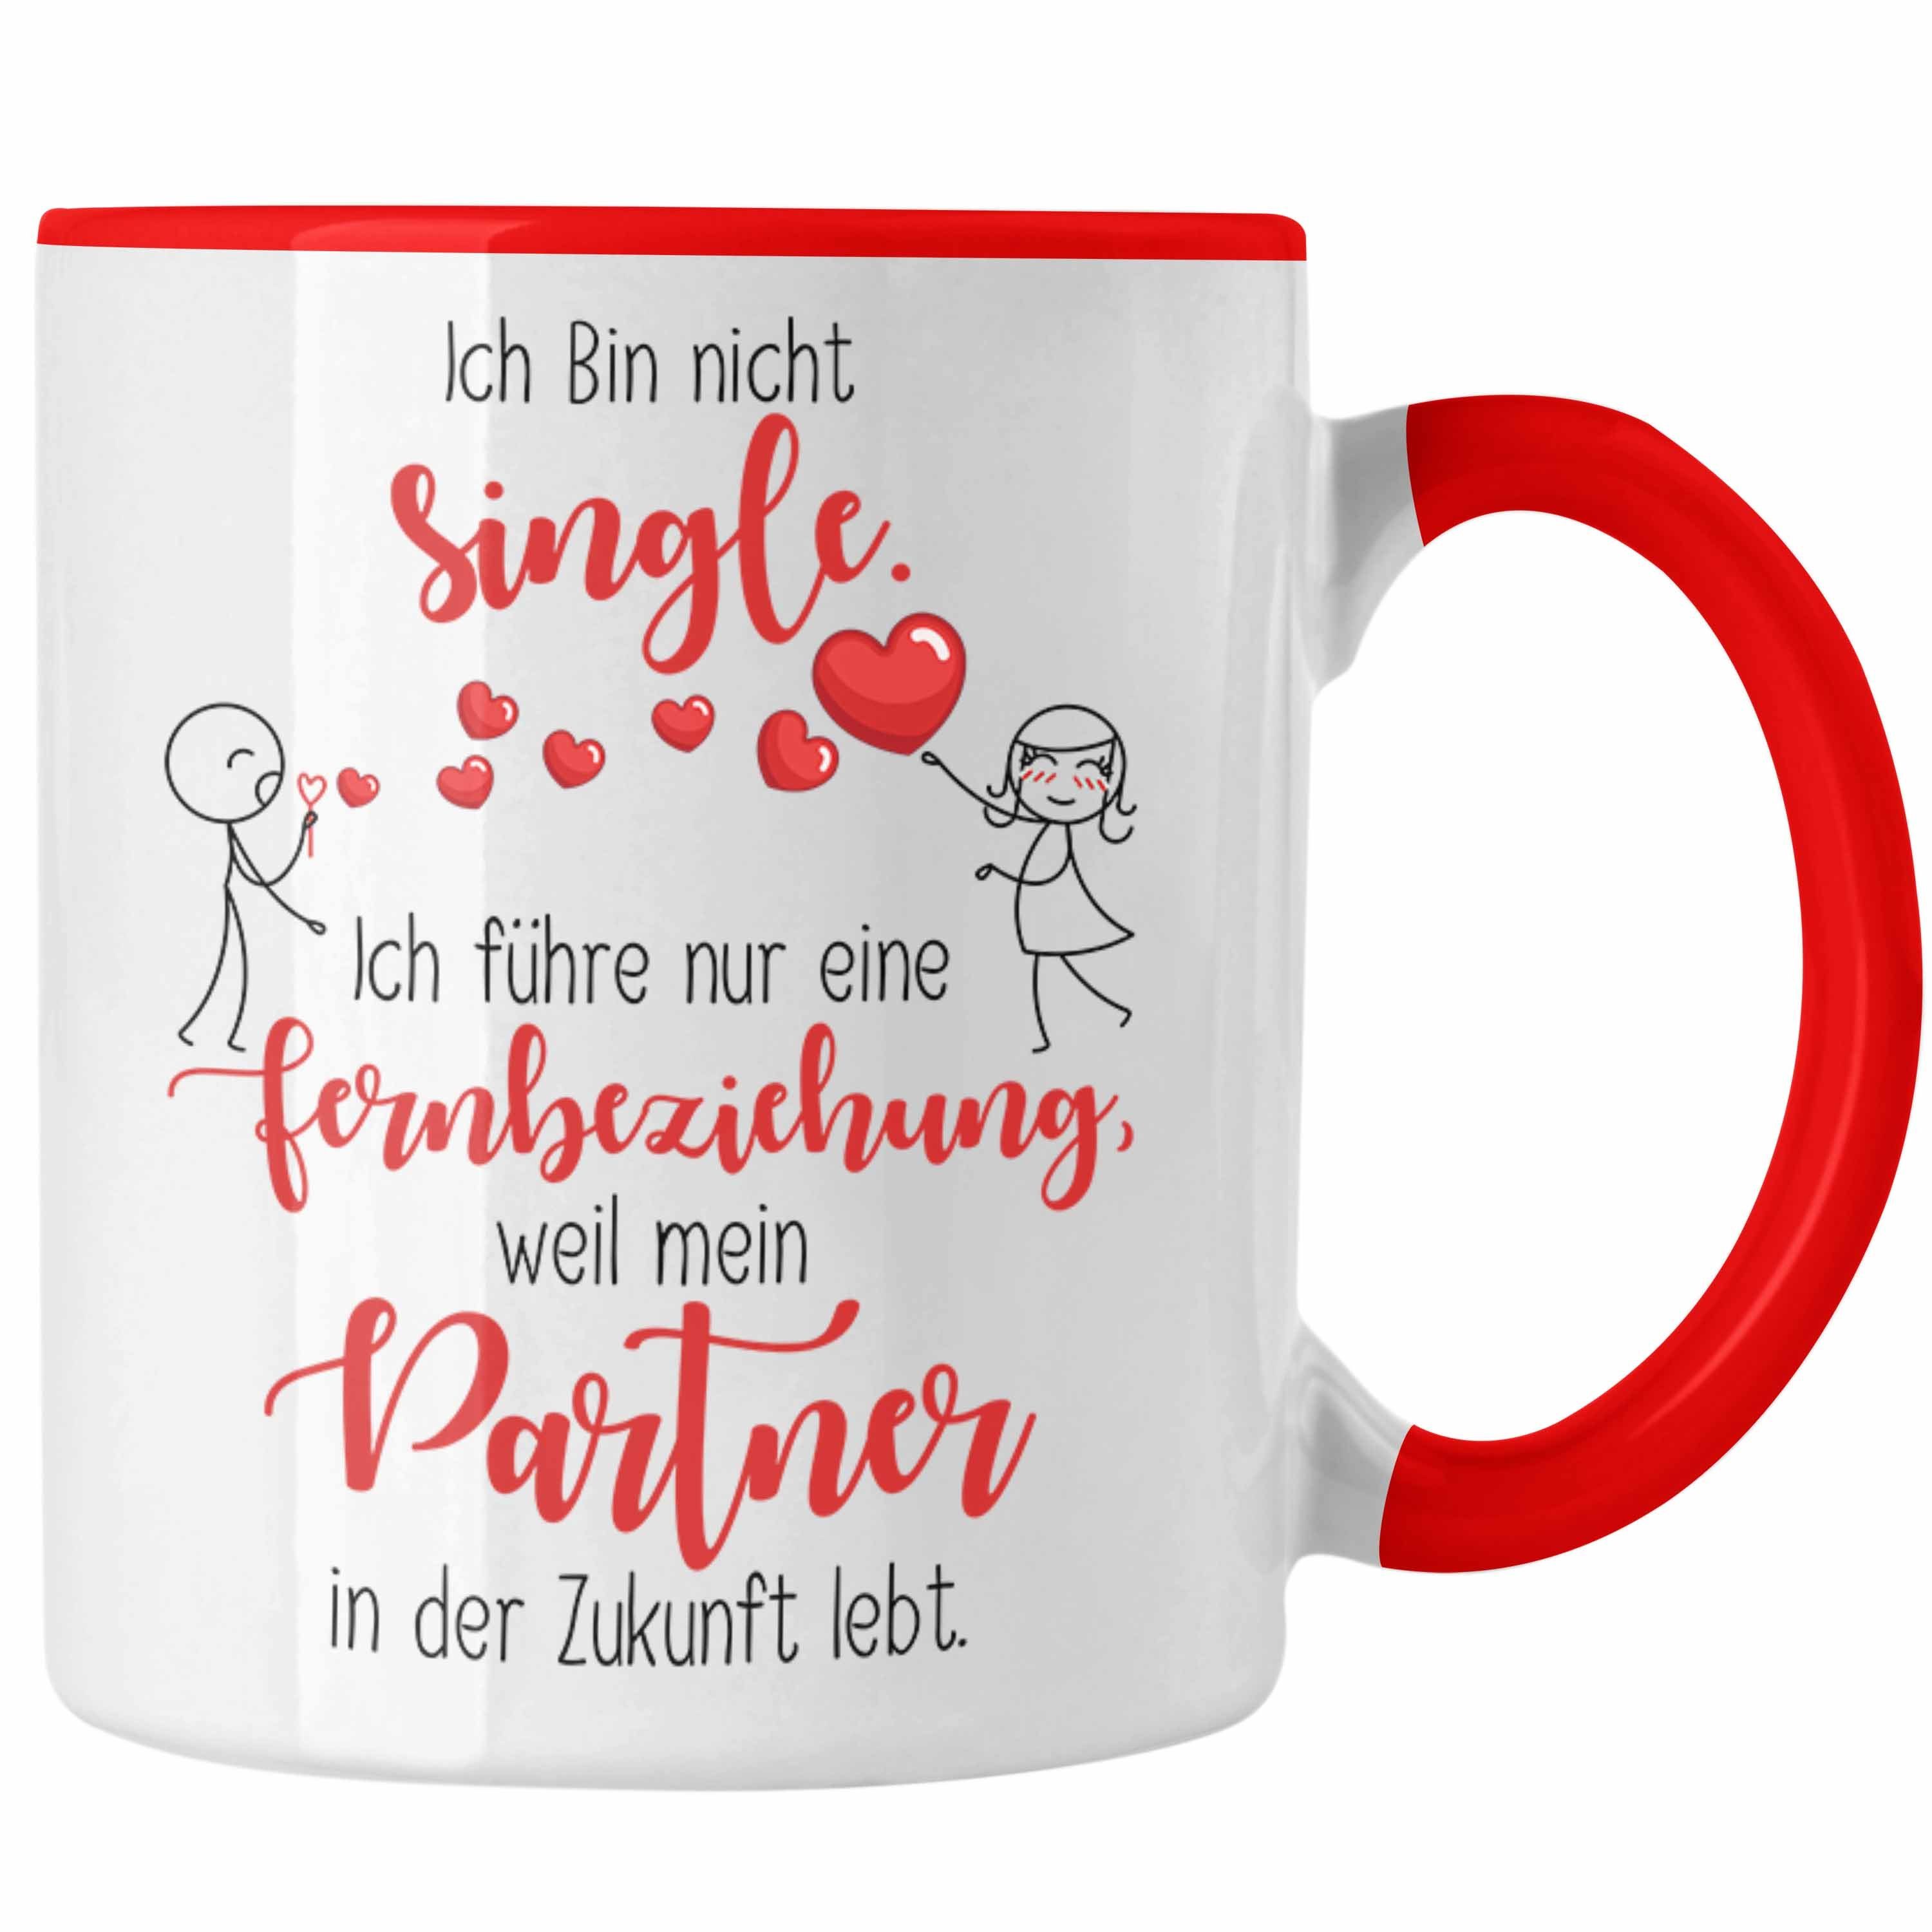 Trendation Tasse Single Tasse Geschenk Fernbeziehung mit Partner in der Zukunft Geschen Rot